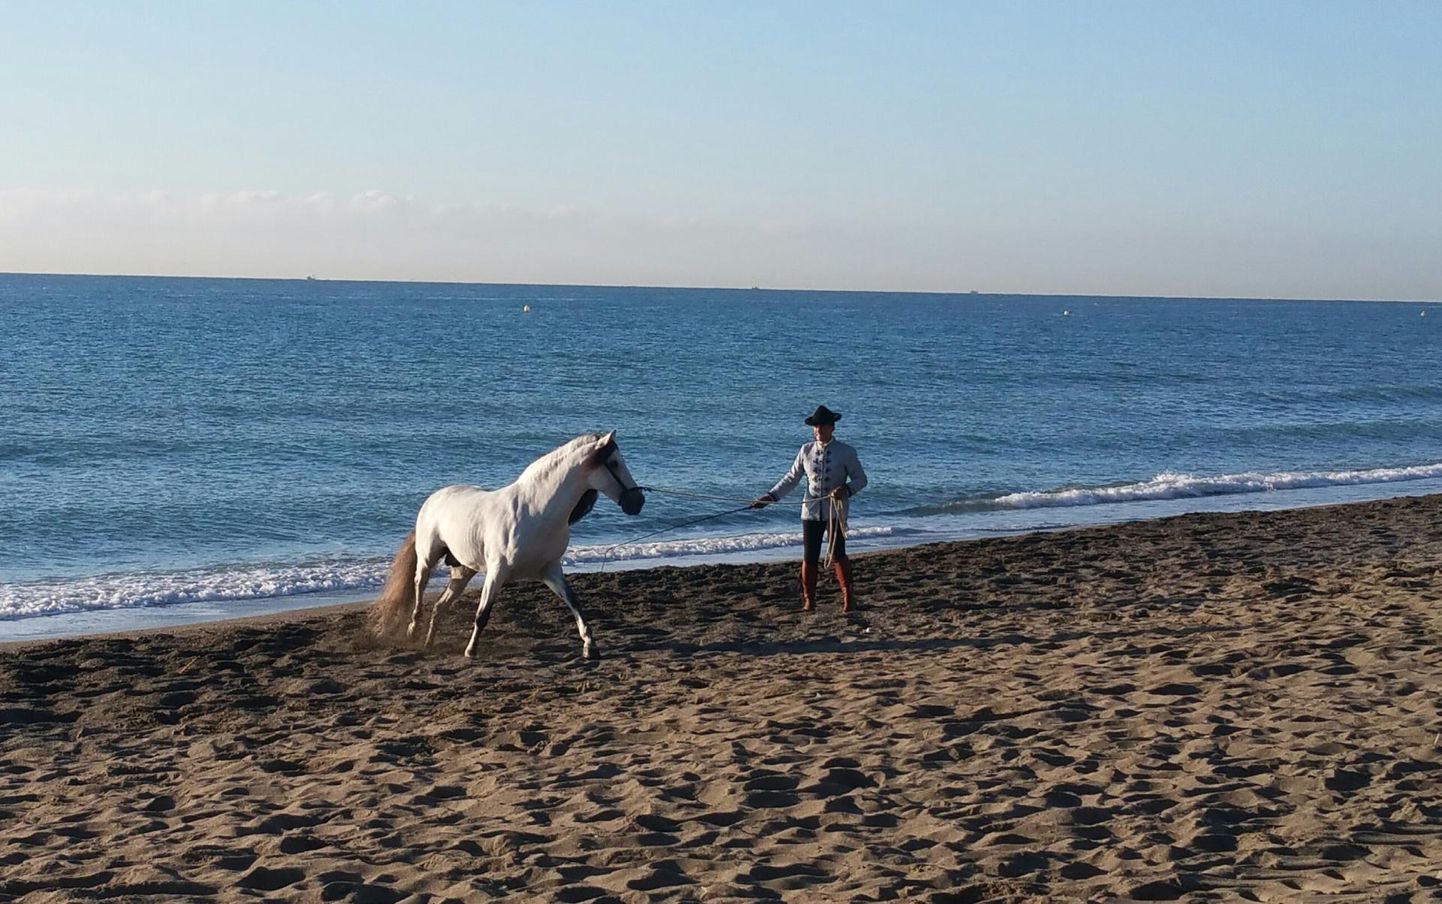 Hispaania rahvarõivais meest andaluusia hobusega ei kohta mererannas just iga päev. Meie juhtusime nendega kokku tänu fotosessioonile.